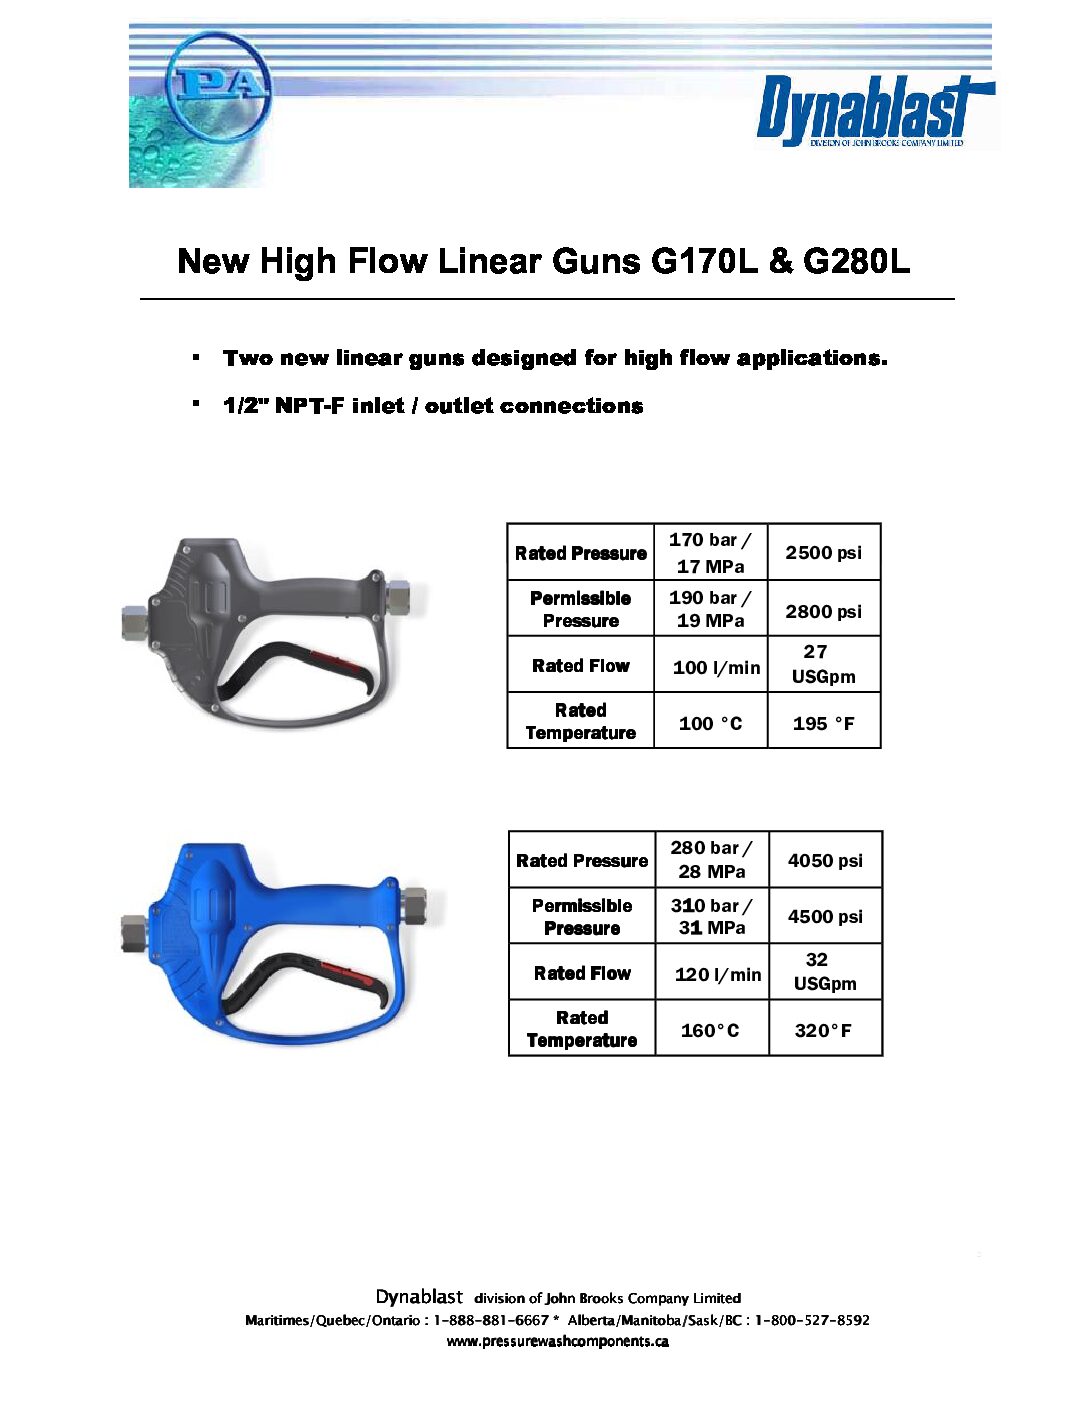 PA G170L & G280L High Flow Linear Gun Sell Sheet